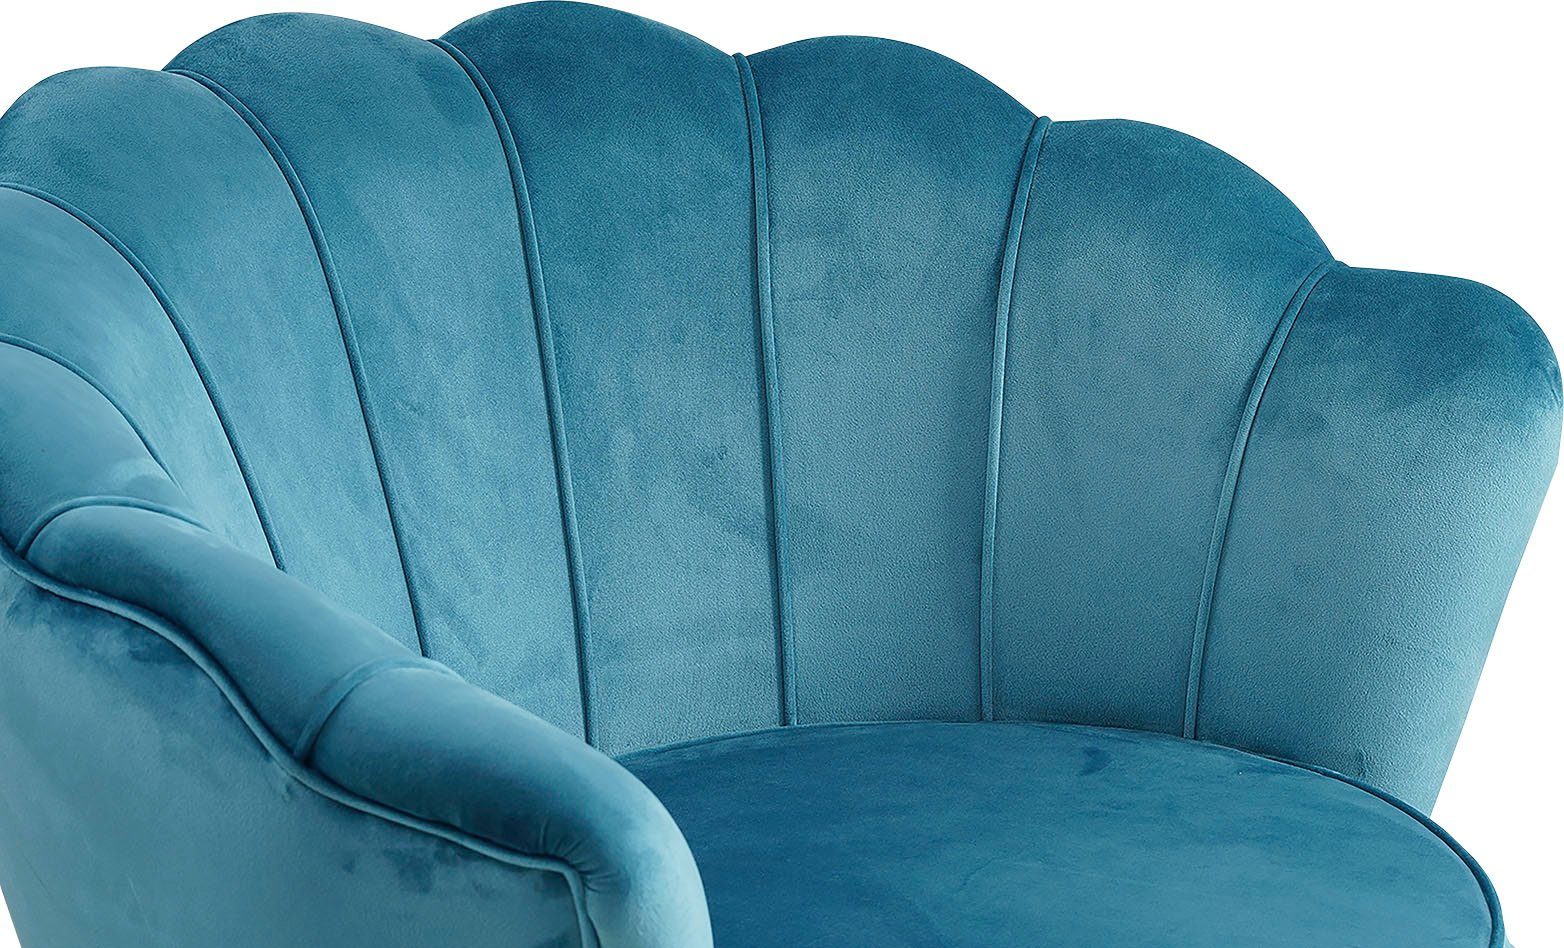 Muscheldesign Loungesessel Blau SalesFever Clam, extravagantes